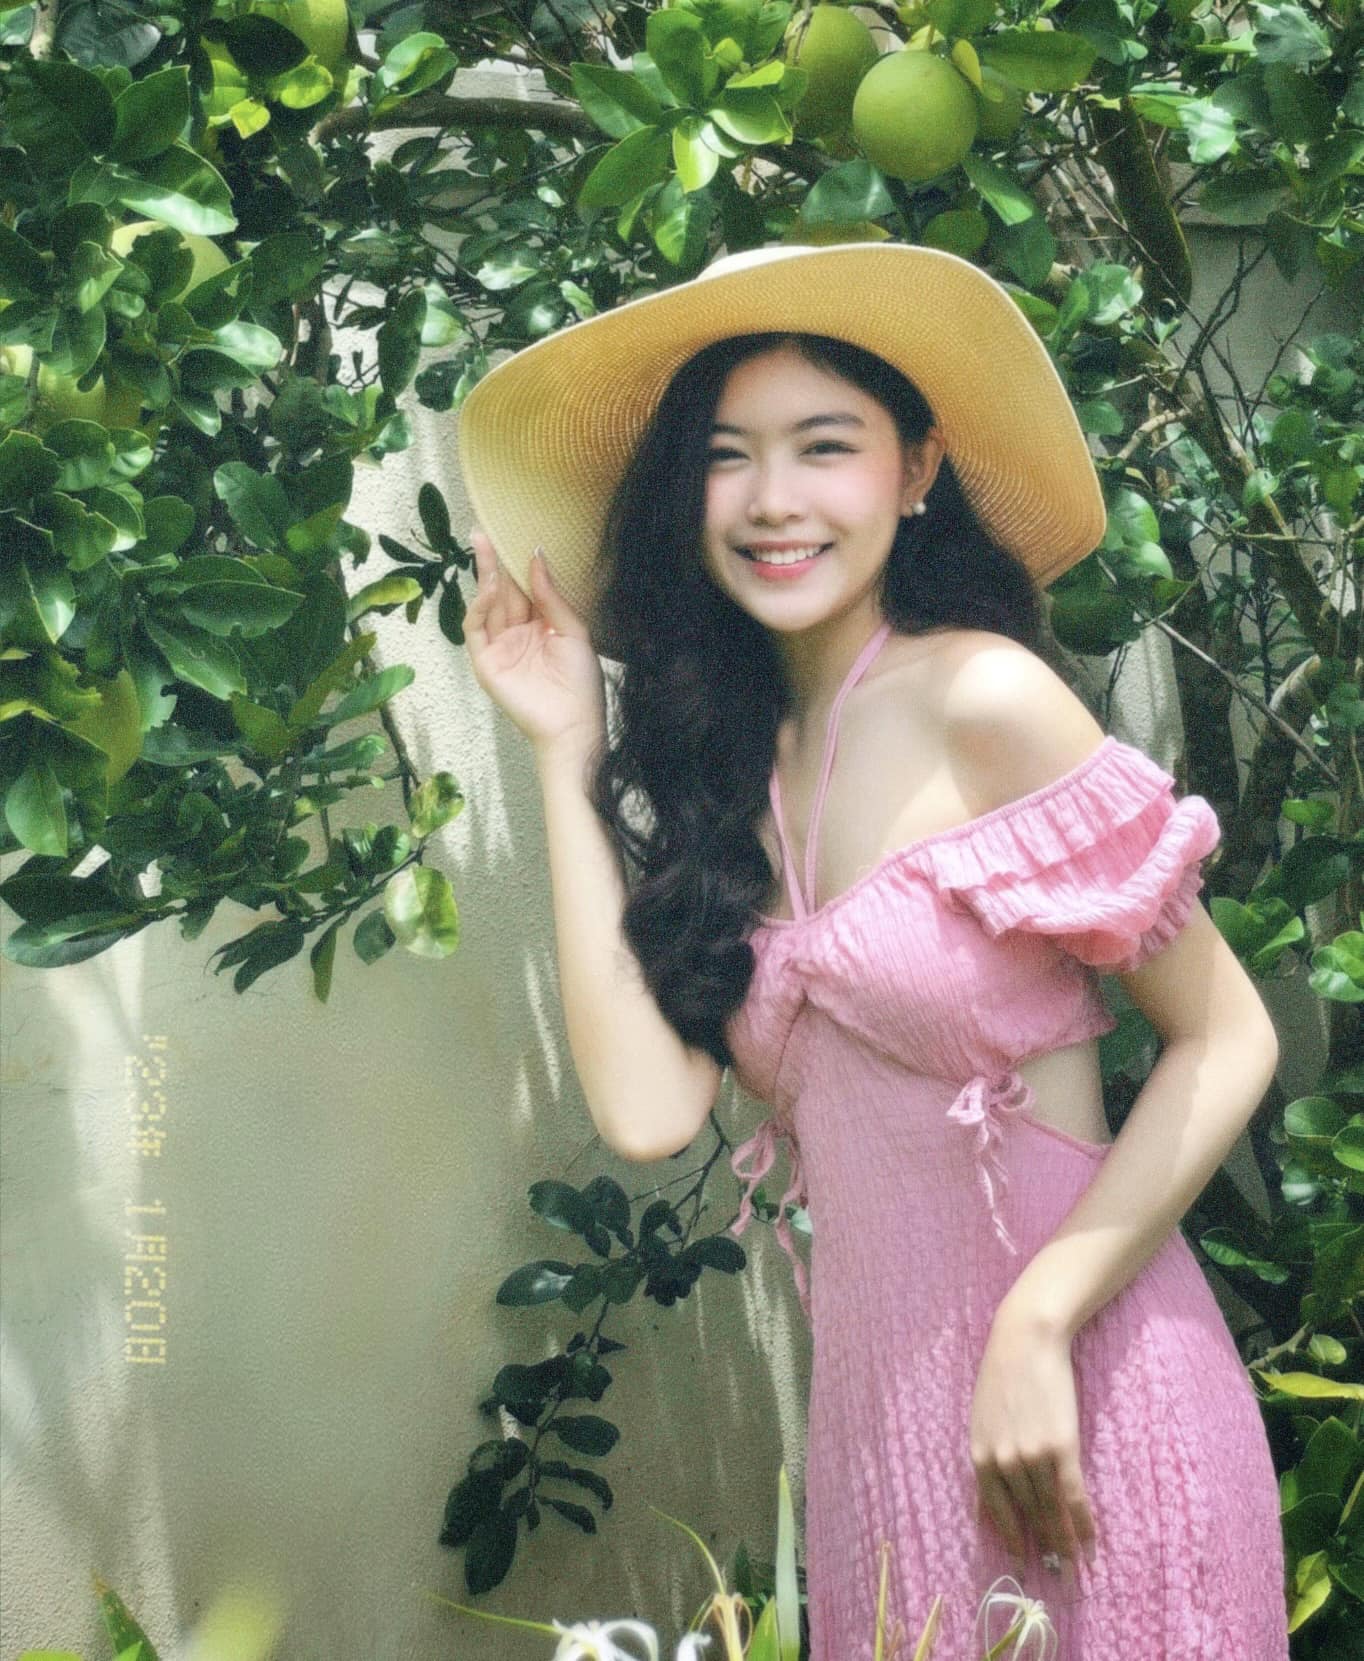 Không chỉ đẹp như Hoa hậu, vóc dáng của con gái lớn nhà Quyền Linh cũng khiến netizen xuýt xoa: Tỷ lệ cơ thể lẫn vòng eo đều khó chê - Ảnh 6.